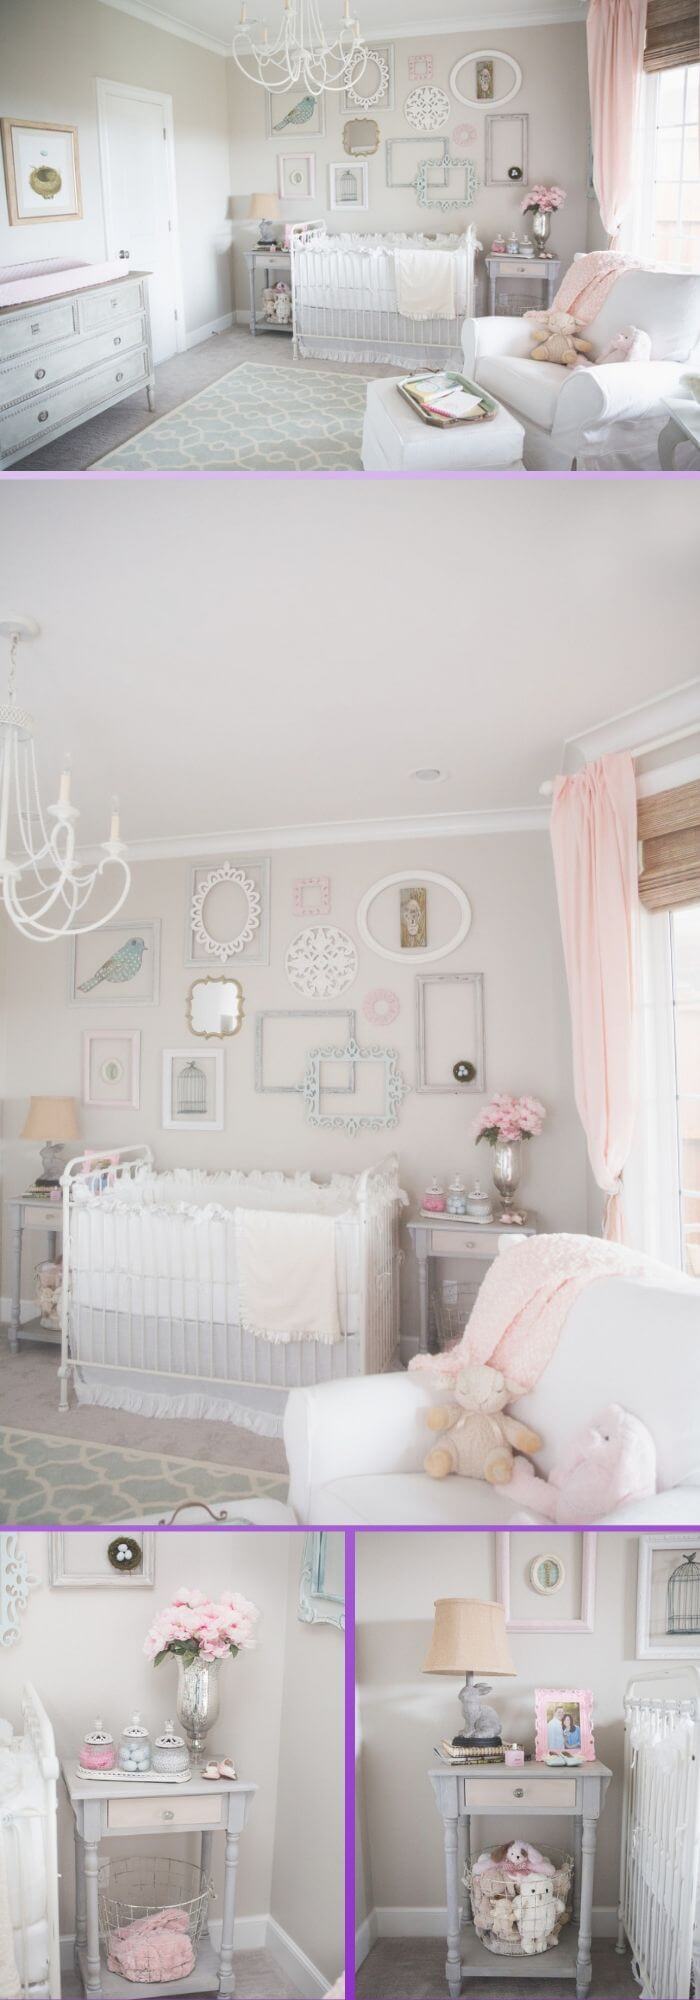 20 nursery decor ideas